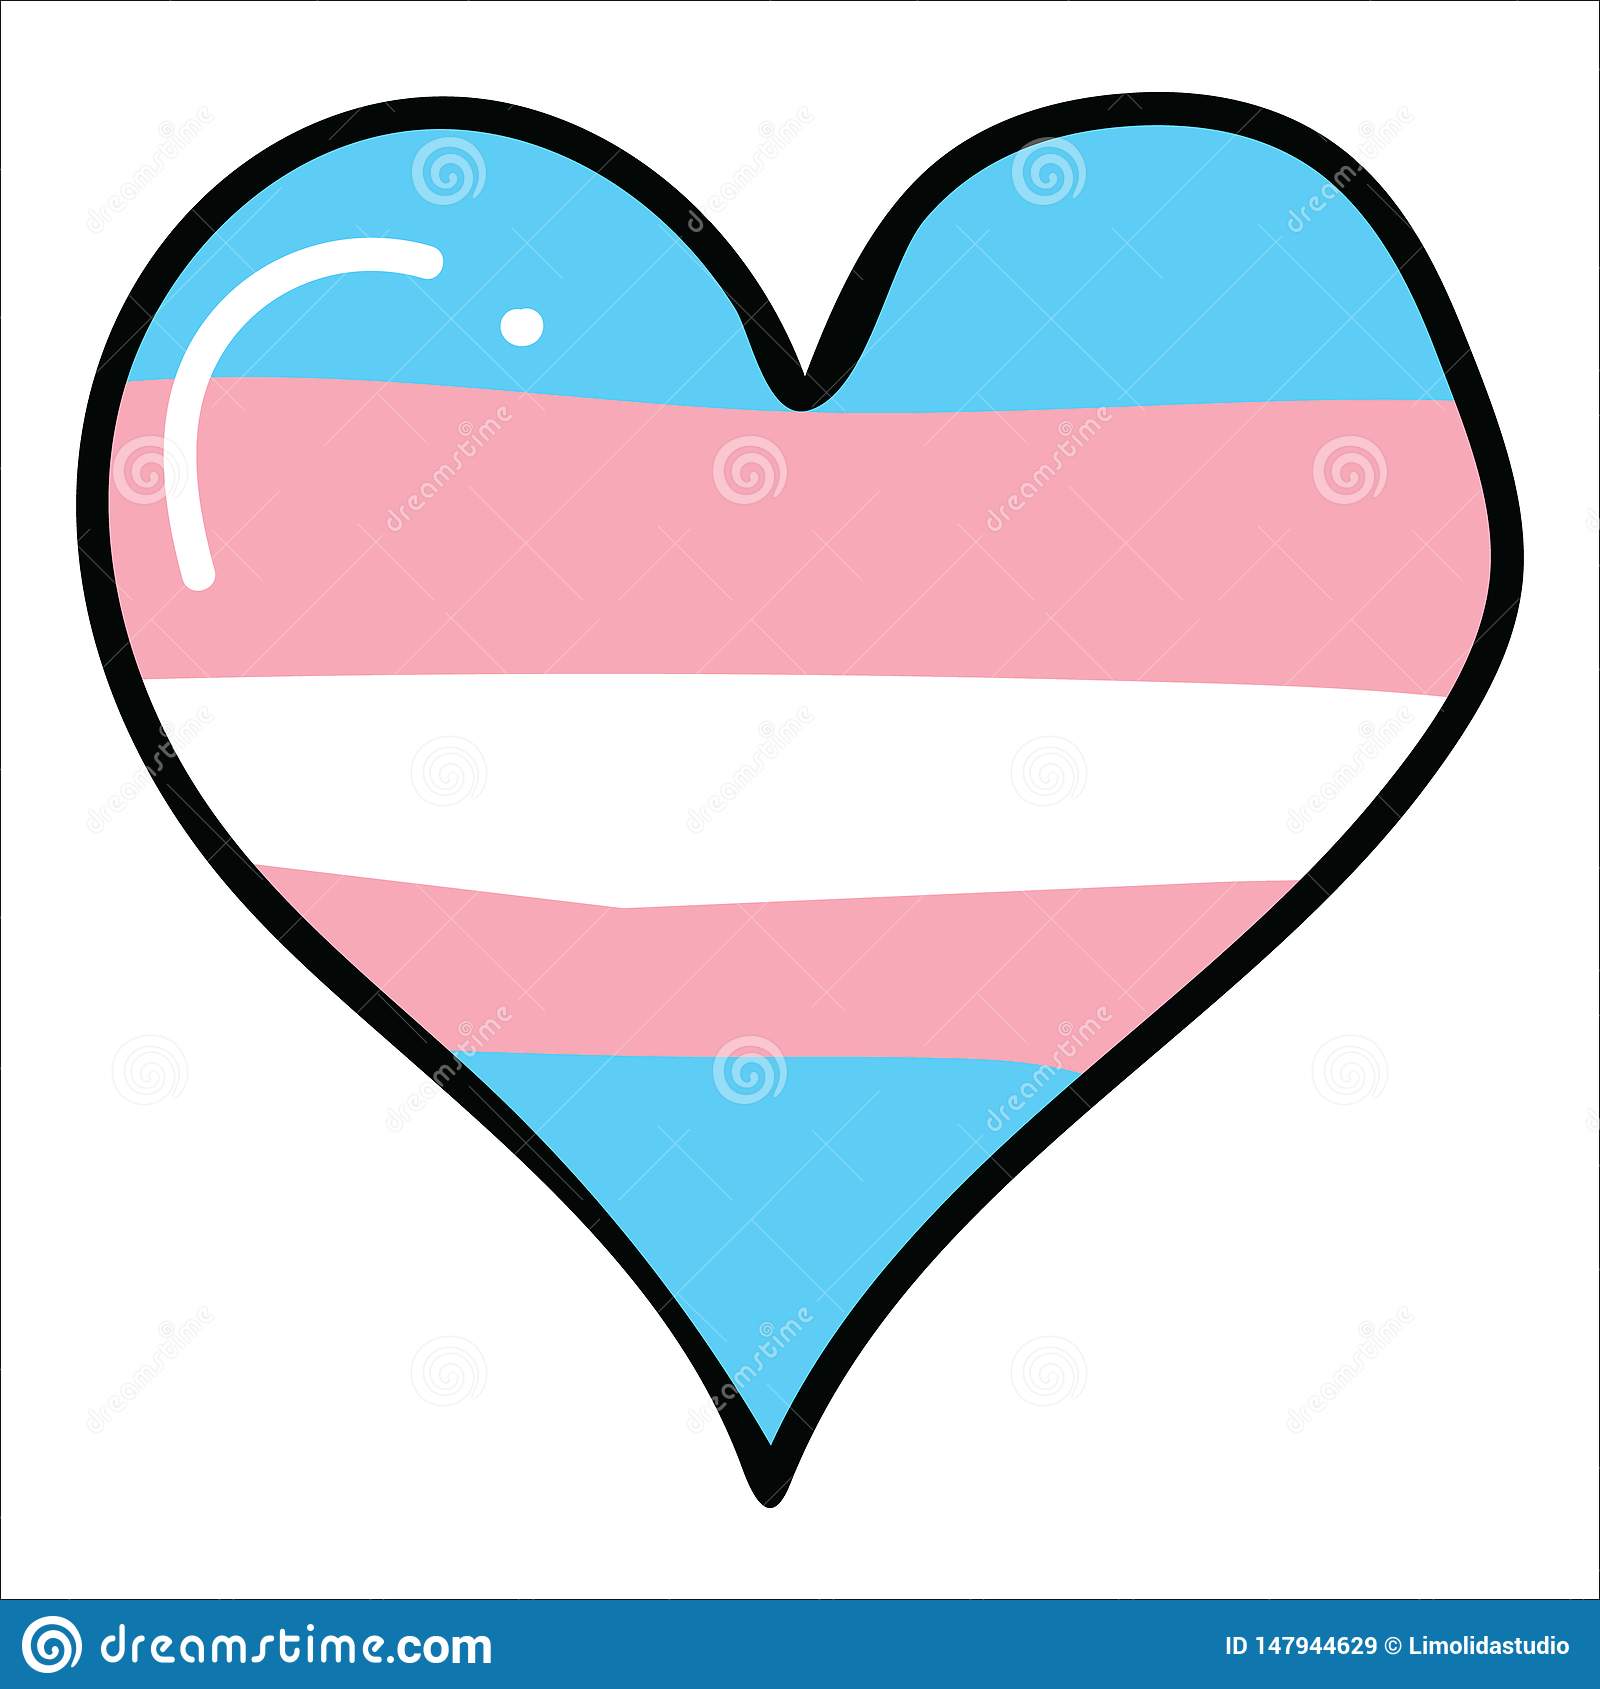 Cute Transgender Heart Cartoon Illustration Motif Set. Hand.